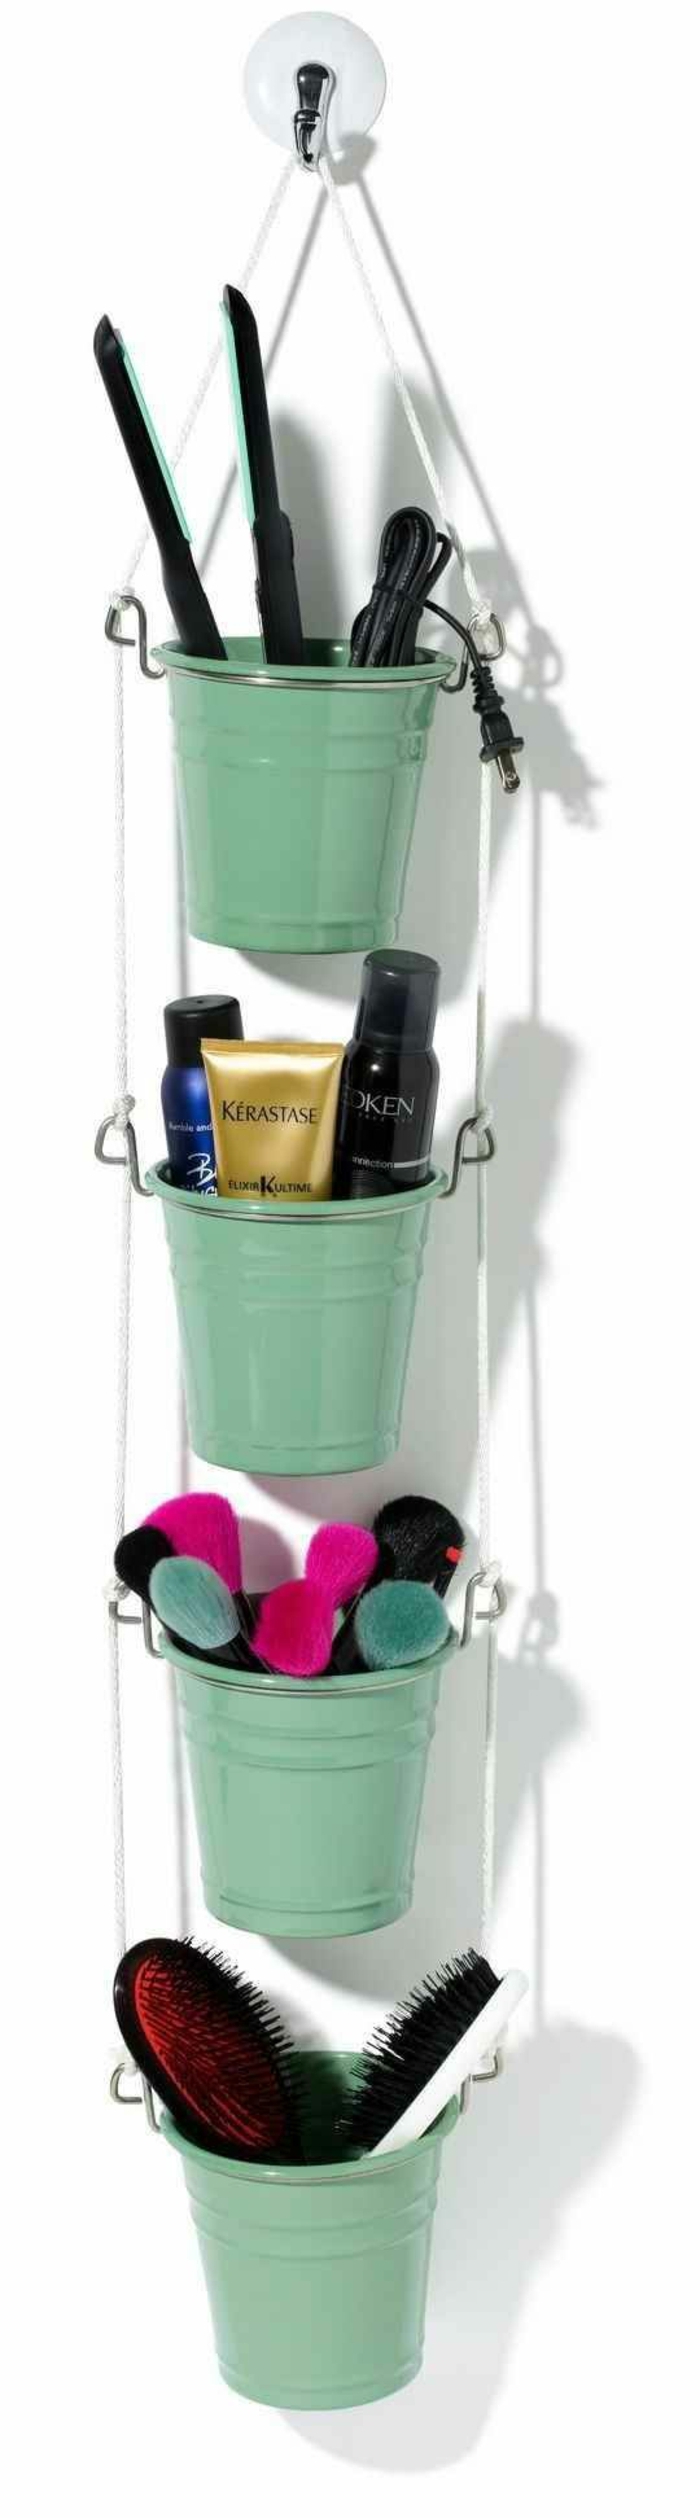 Badezimmer-Ideen-kleine-grüne-Eimer-kosmetische-Produkte